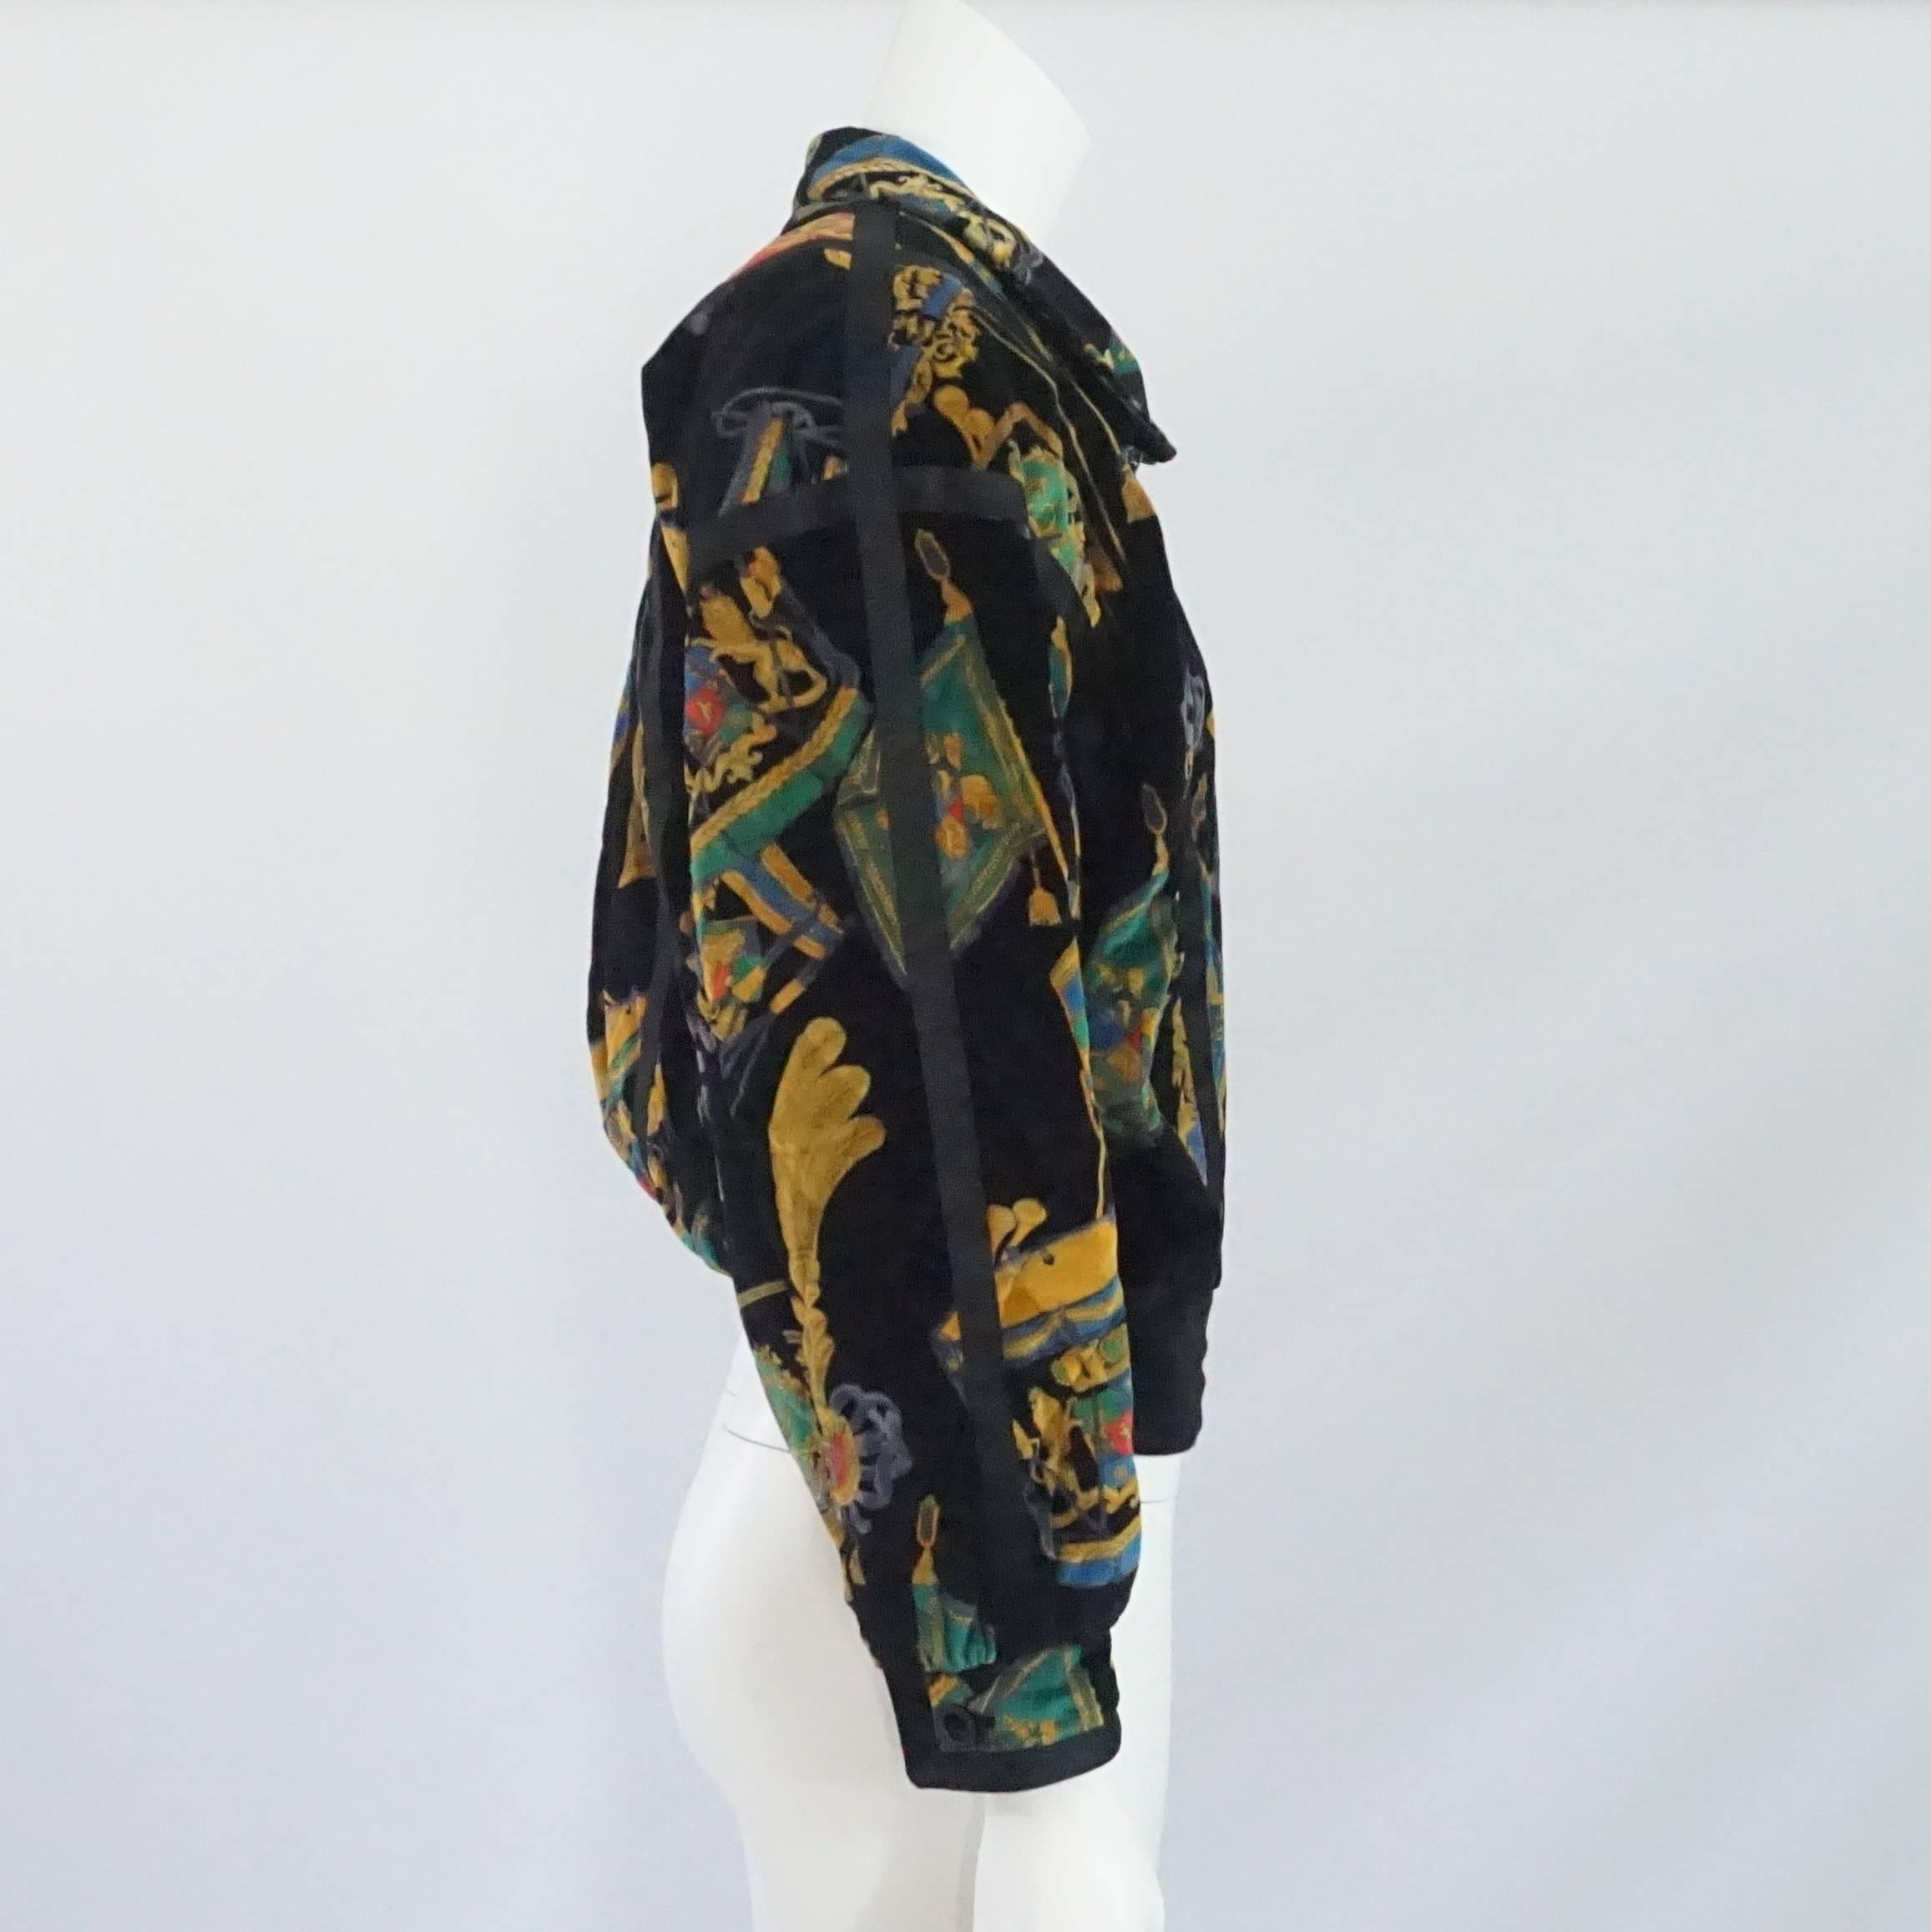 Escada by Margaretha Ley West German Multi Printed Velvet Jacket - 38 - 1980's. Cette veste est un morceau d'histoire coloré et une incroyable déclaration de mode. La veste a été conçue par Margaretha Ley, l'une des fondatrices d'Escada. La veste